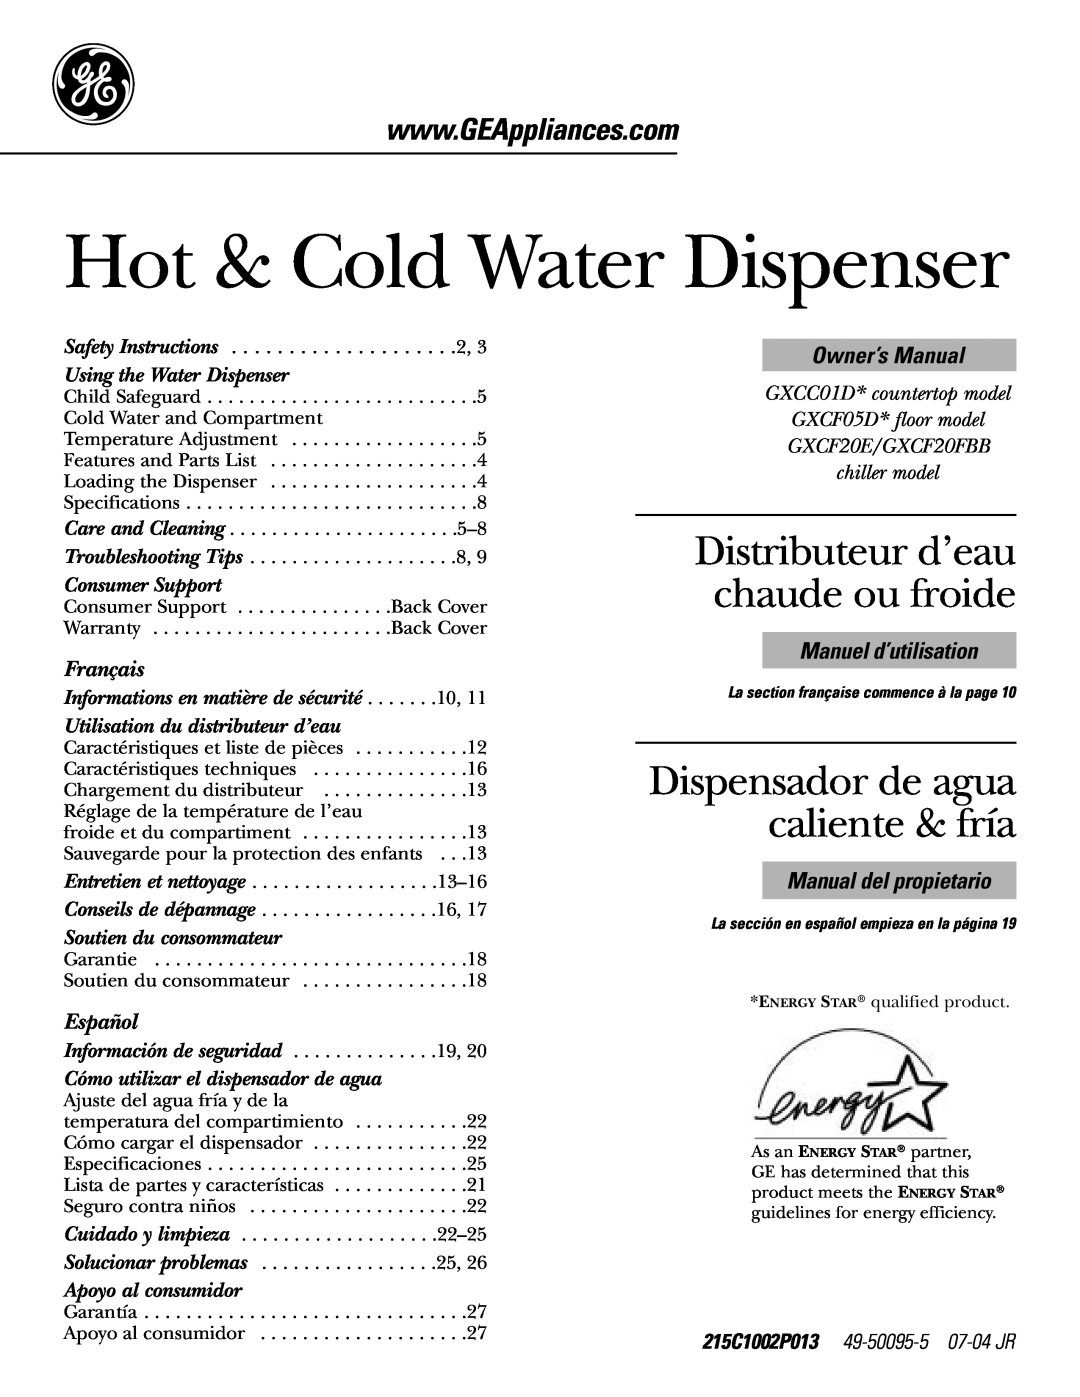 GE GXCF20E, GXCF20FBB owner manual Hot & Cold Water Dispenser, Distributeur d’eau chaude ou froide, Français, Español 